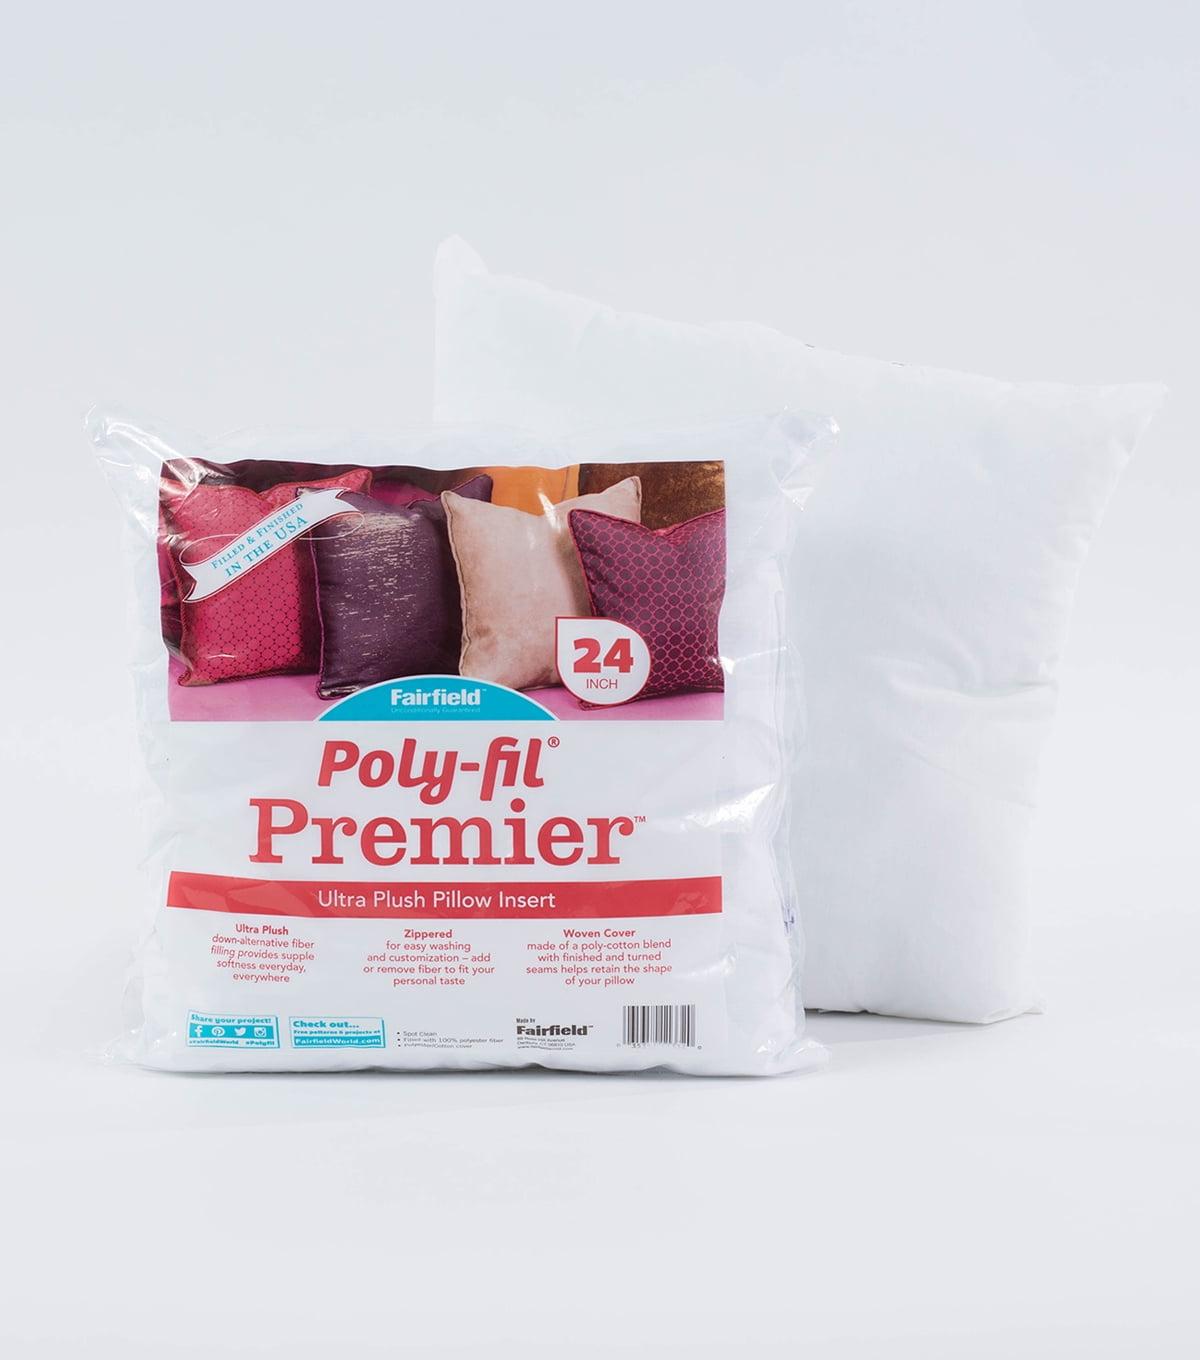 Ultra Plush Cotton Blend 24" Oversized Accent Pillow Insert